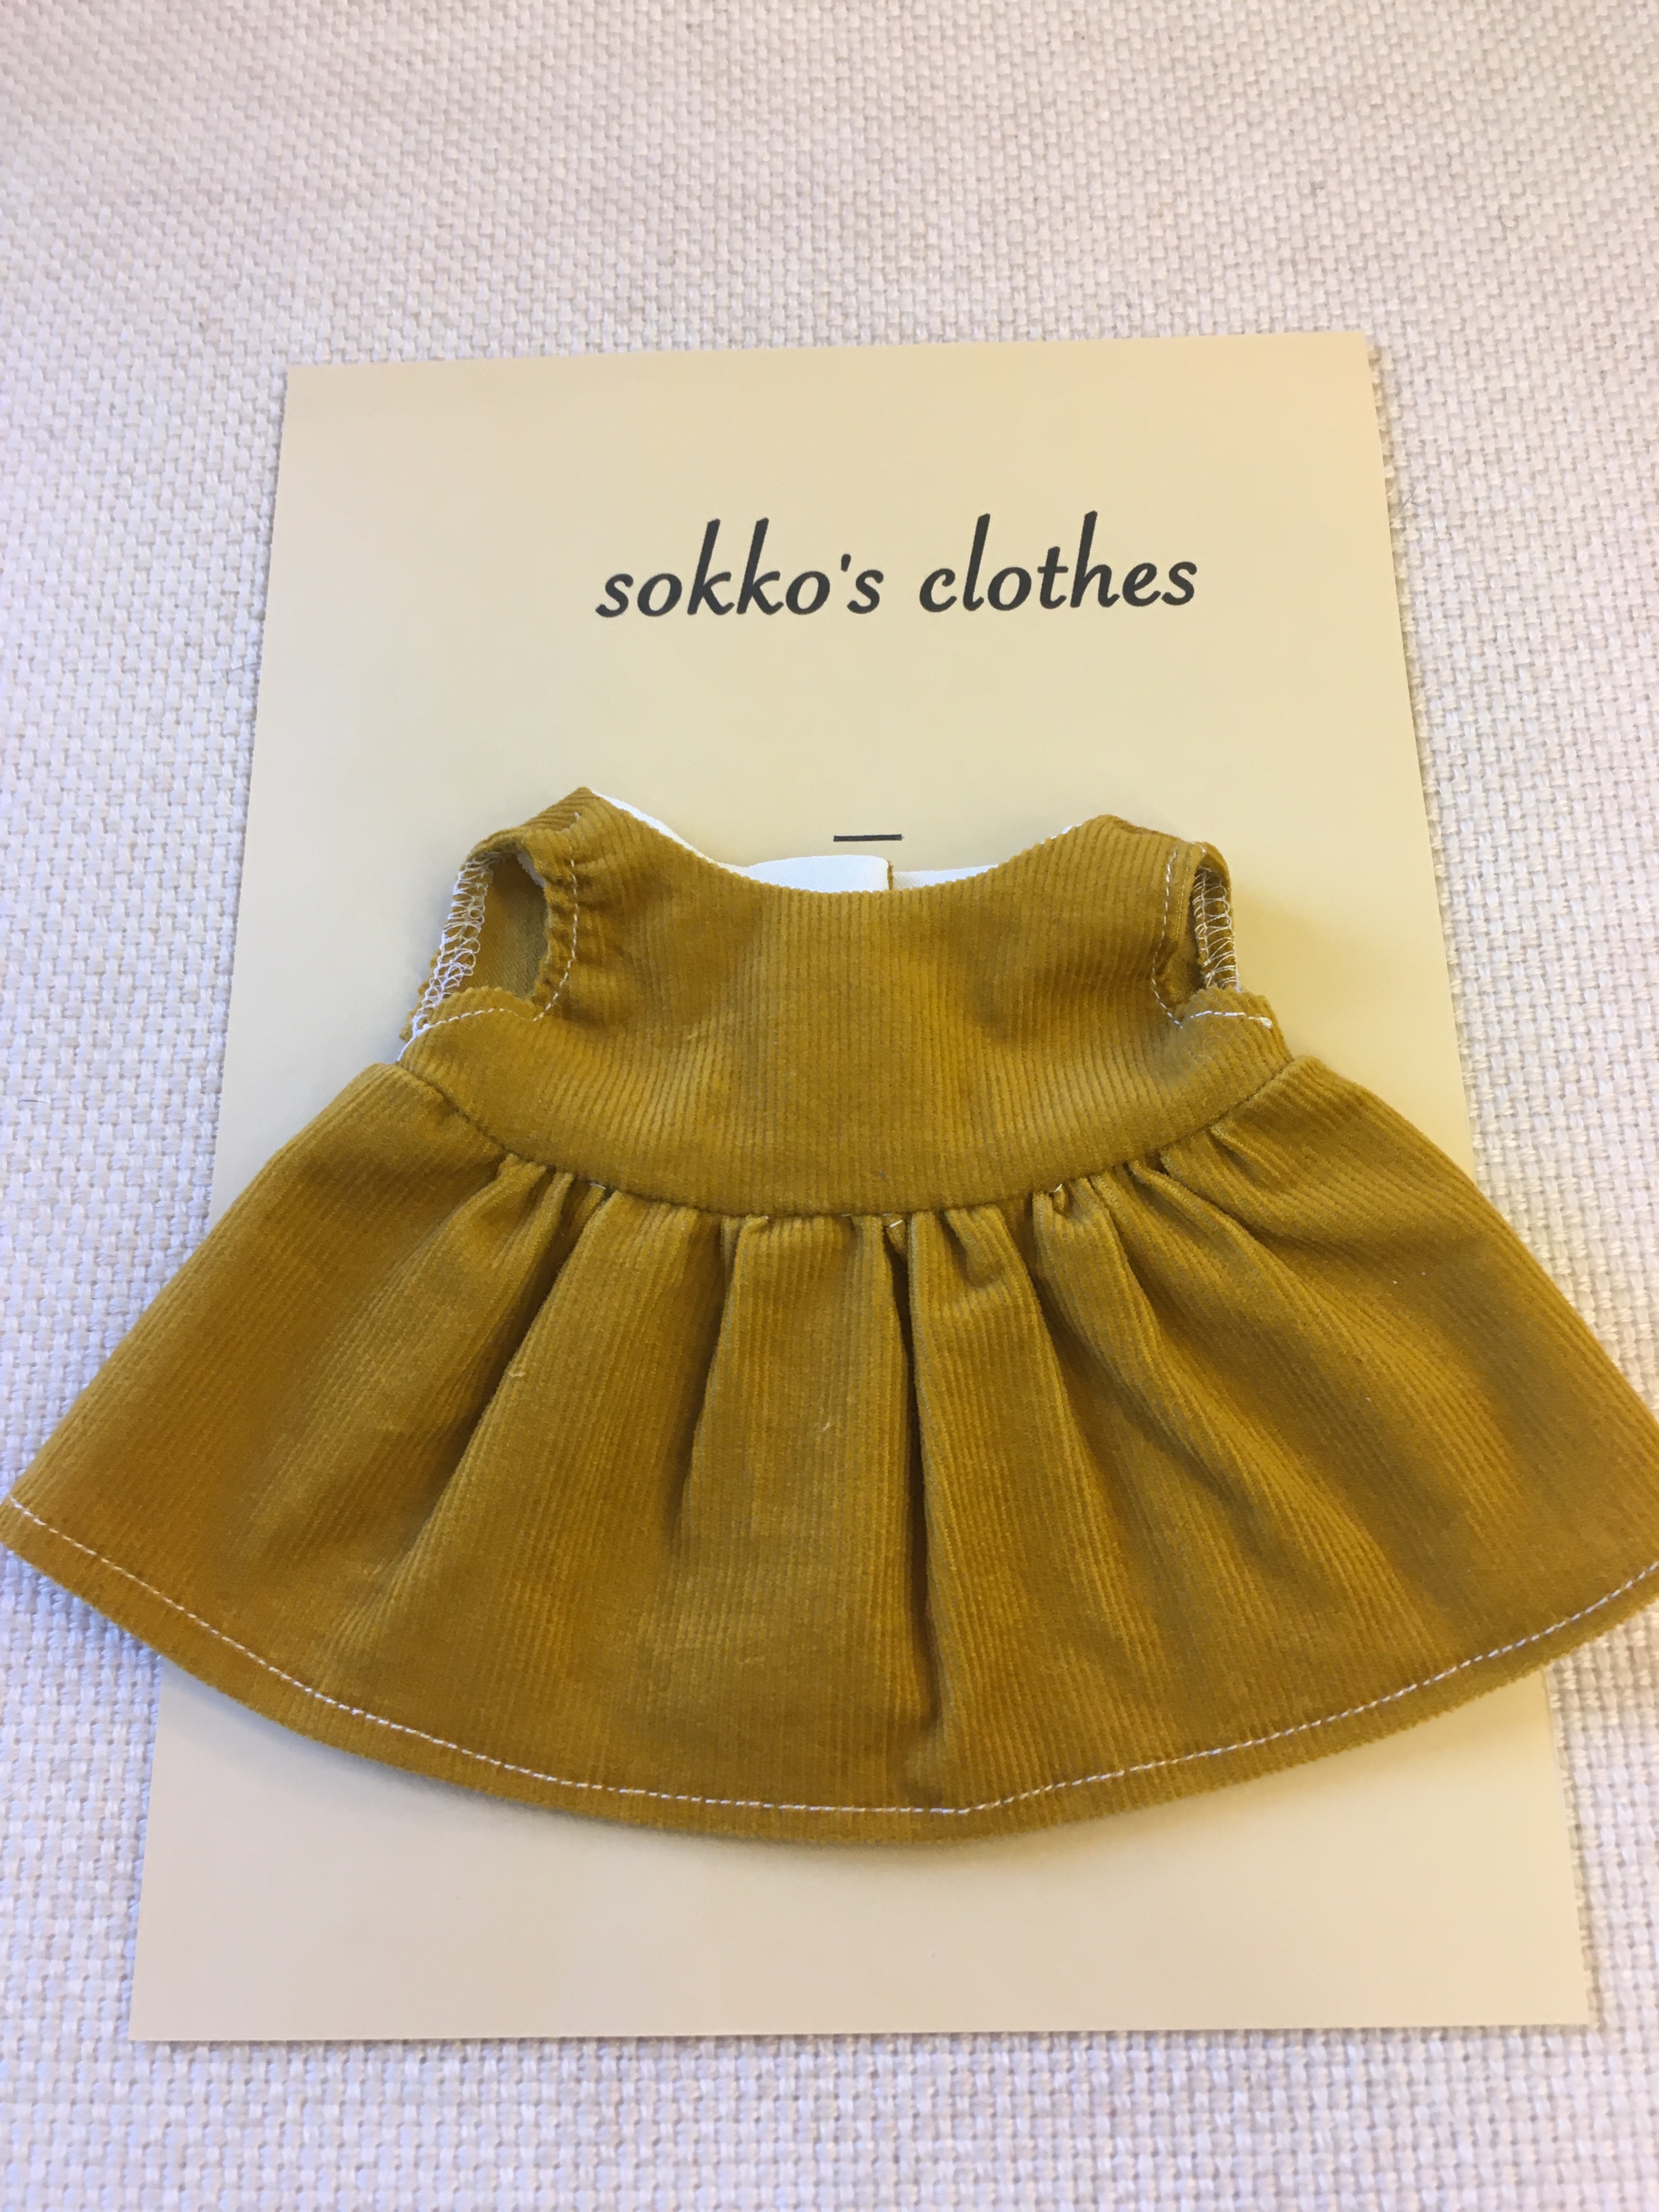 Sokko S Dress 黄土色 コーデュロイワンピース Iichi ハンドメイド クラフト作品 手仕事品の通販